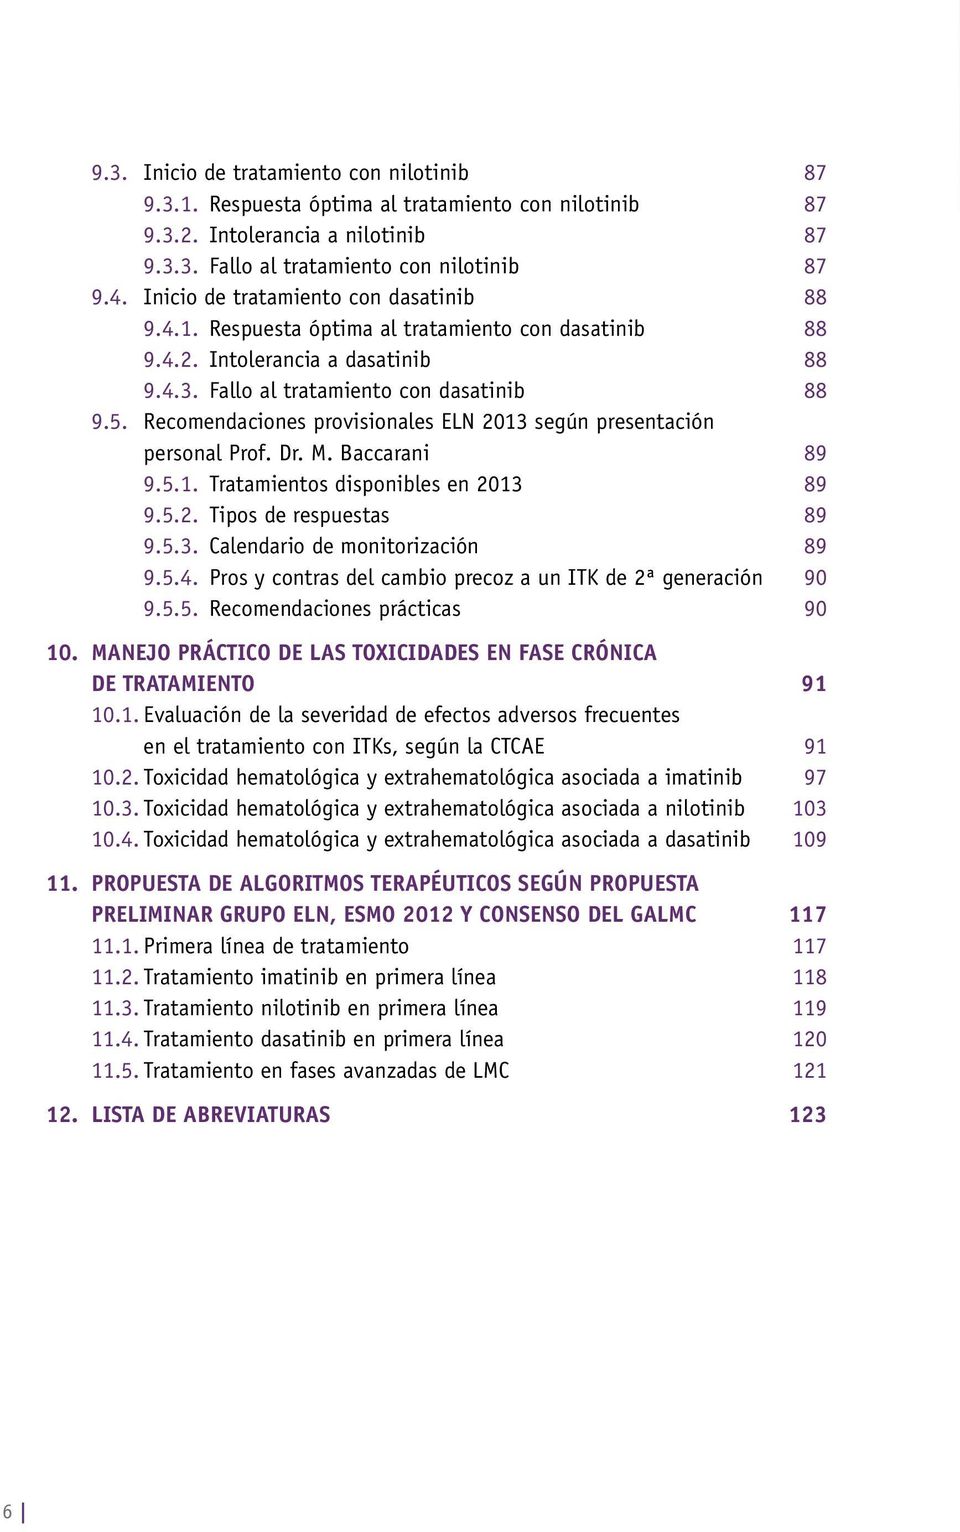 Recomendaciones provisionales ELN 2013 según presentación personal Prof. Dr. M. Baccarani 89 9.5.1. Tratamientos disponibles en 2013 89 9.5.2. Tipos de respuestas 89 9.5.3. Calendario de monitorización 89 9.